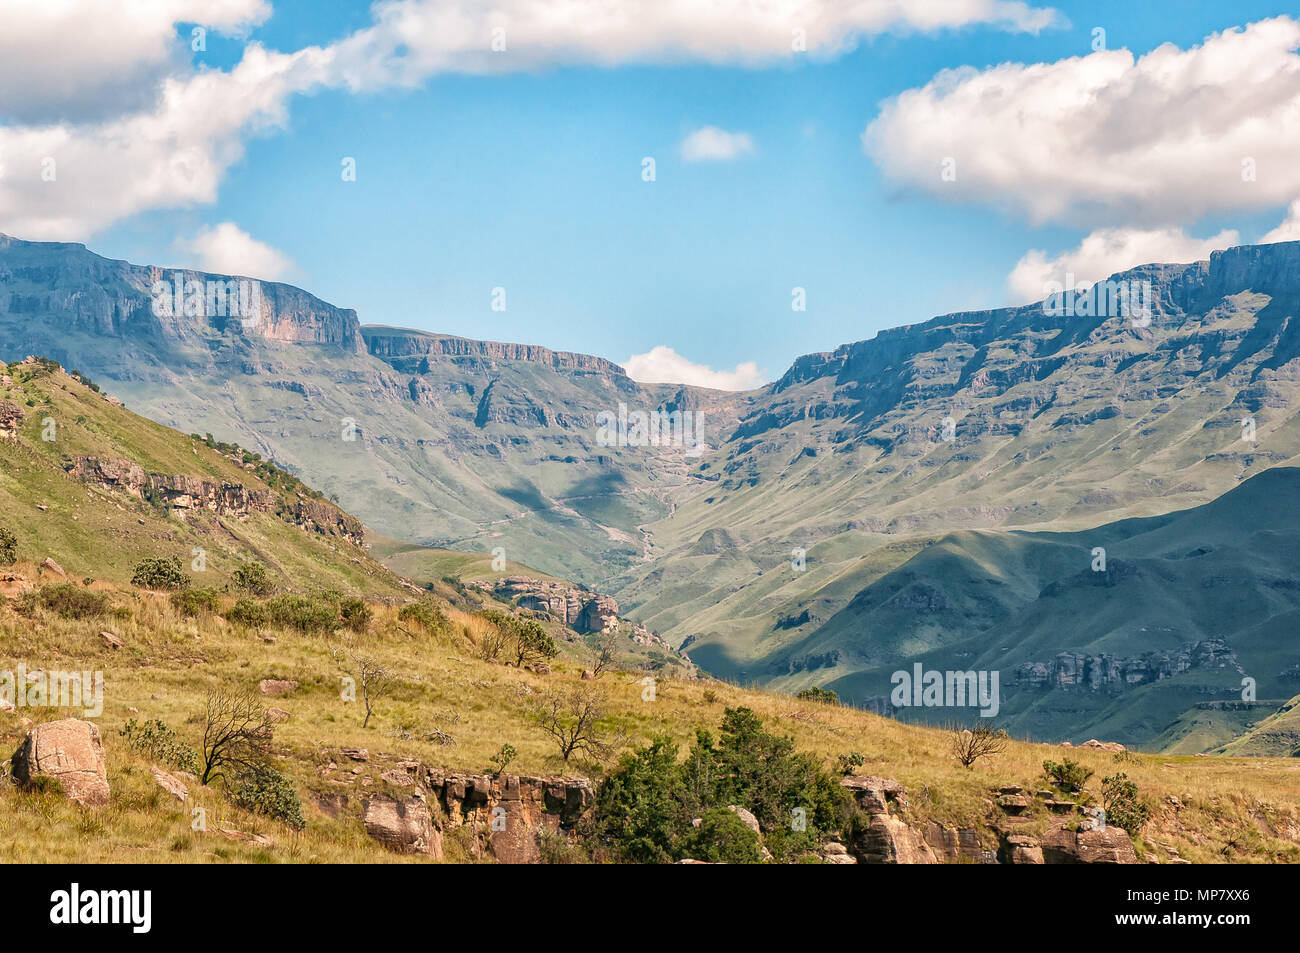 Landschaft auf dem Weg zum Sani Pass Grenzposten in der Nähe von Himeville, in der Provinz Kwazulu-Natal. Die serpentinen der Sani Pass ist sichtbar in der Stockfoto